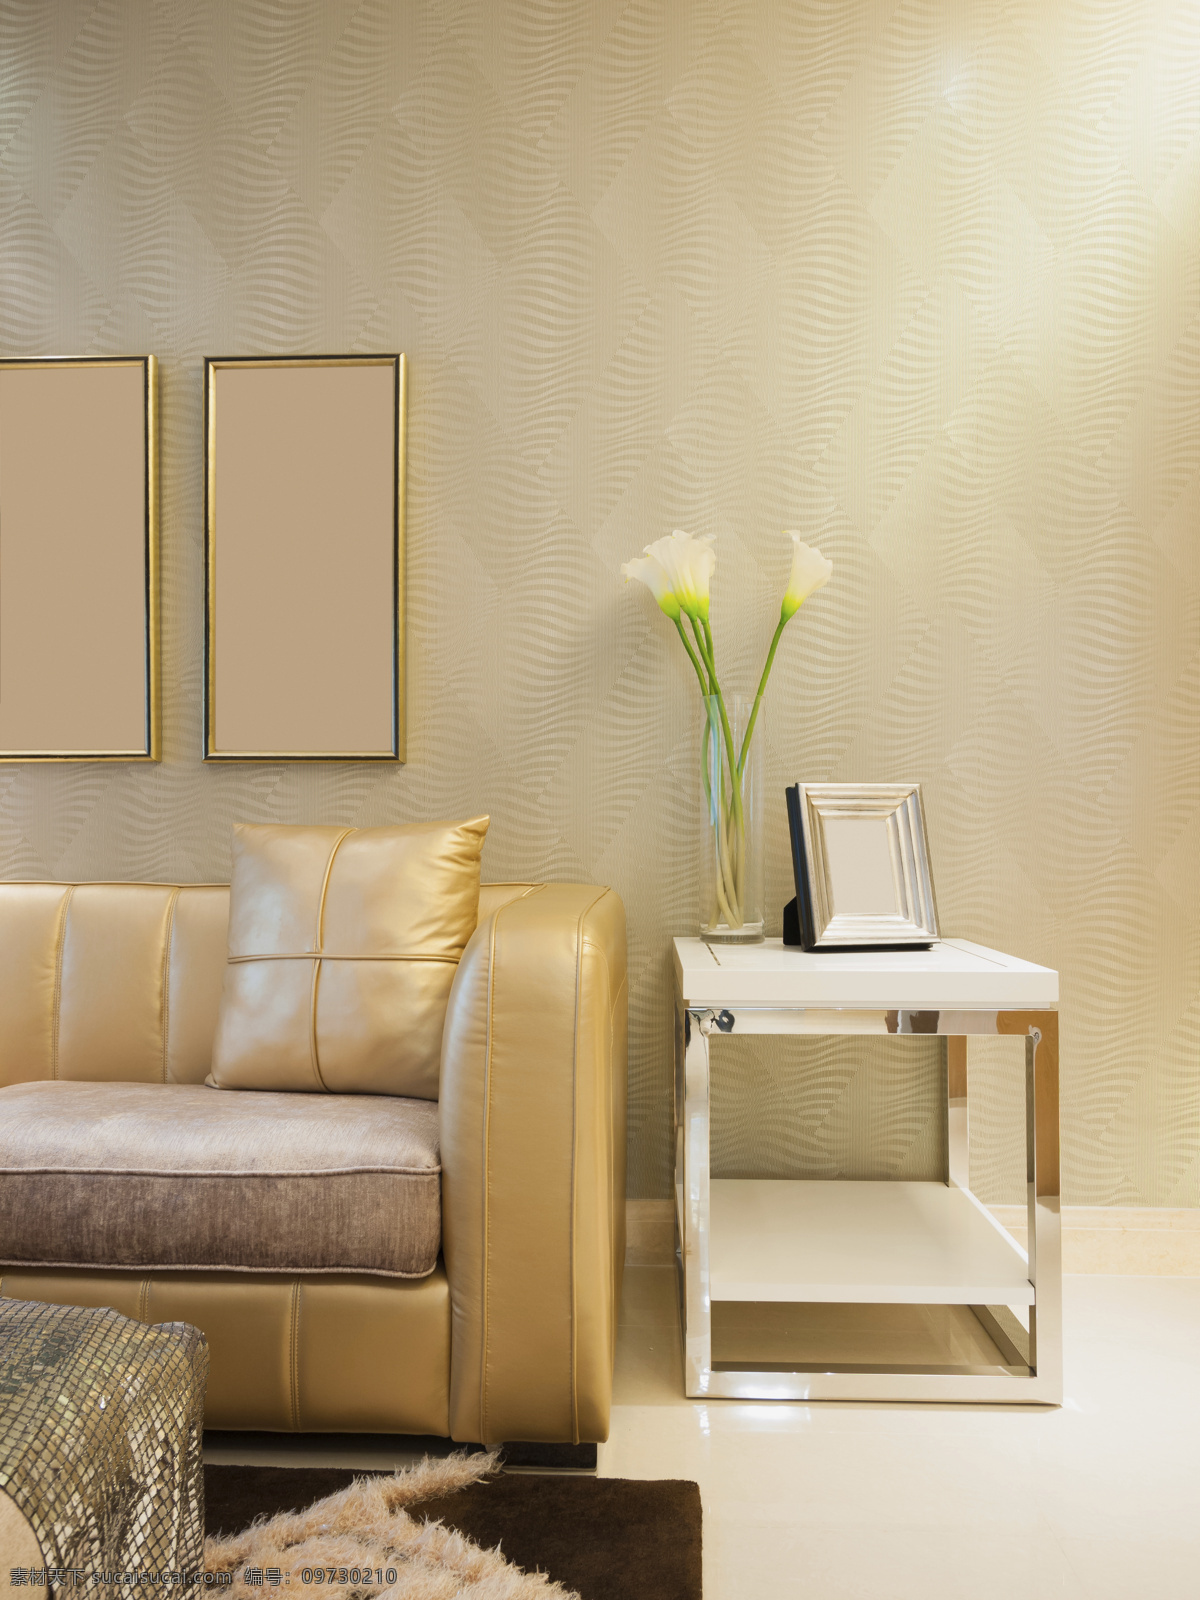 客厅沙发 装饰 客厅 沙发 效果 房子 室内 豪华 现代 室内设计 装饰效果图 家居设计 环境设计